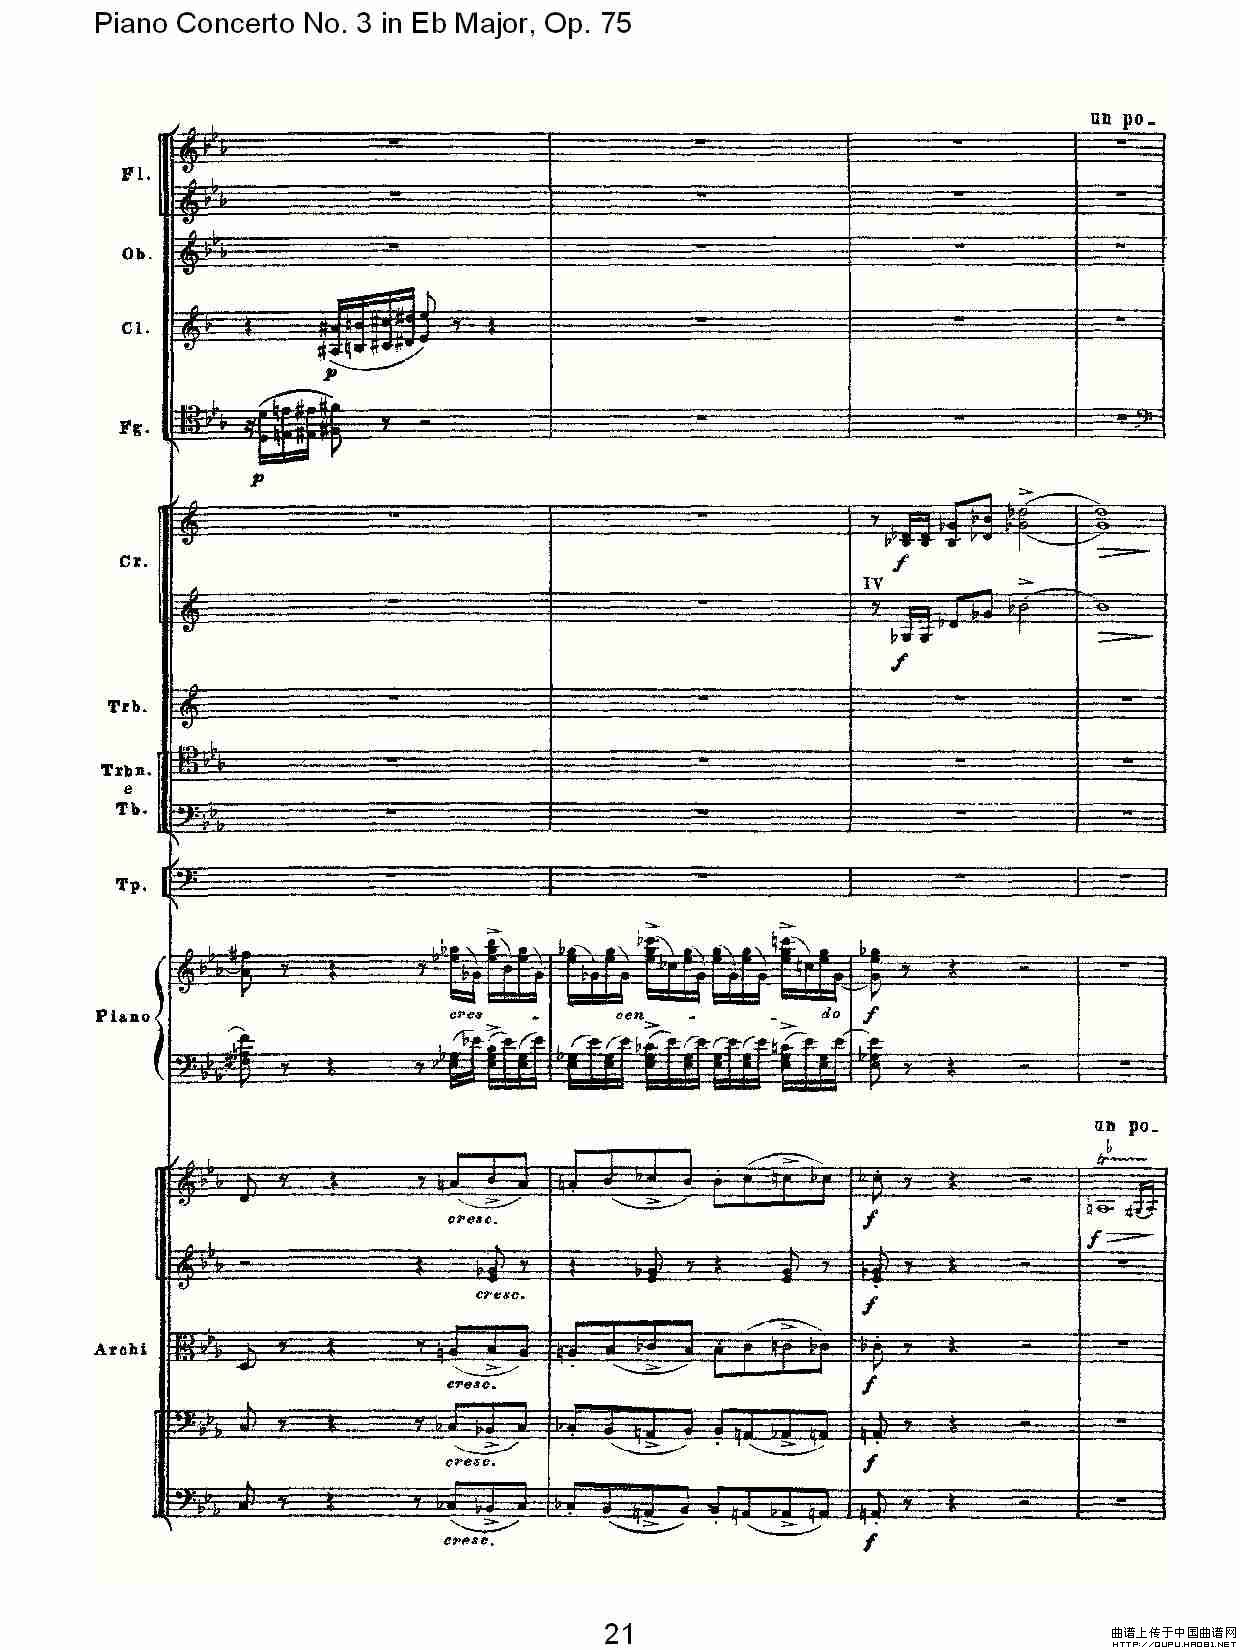 Piano Concerto No.3 in Eb Major, Op.75（Eb大调第三钢琴协奏）(1)_原文件名：Piano Concerto No.3 in Eb Major, Op.7521.jpg